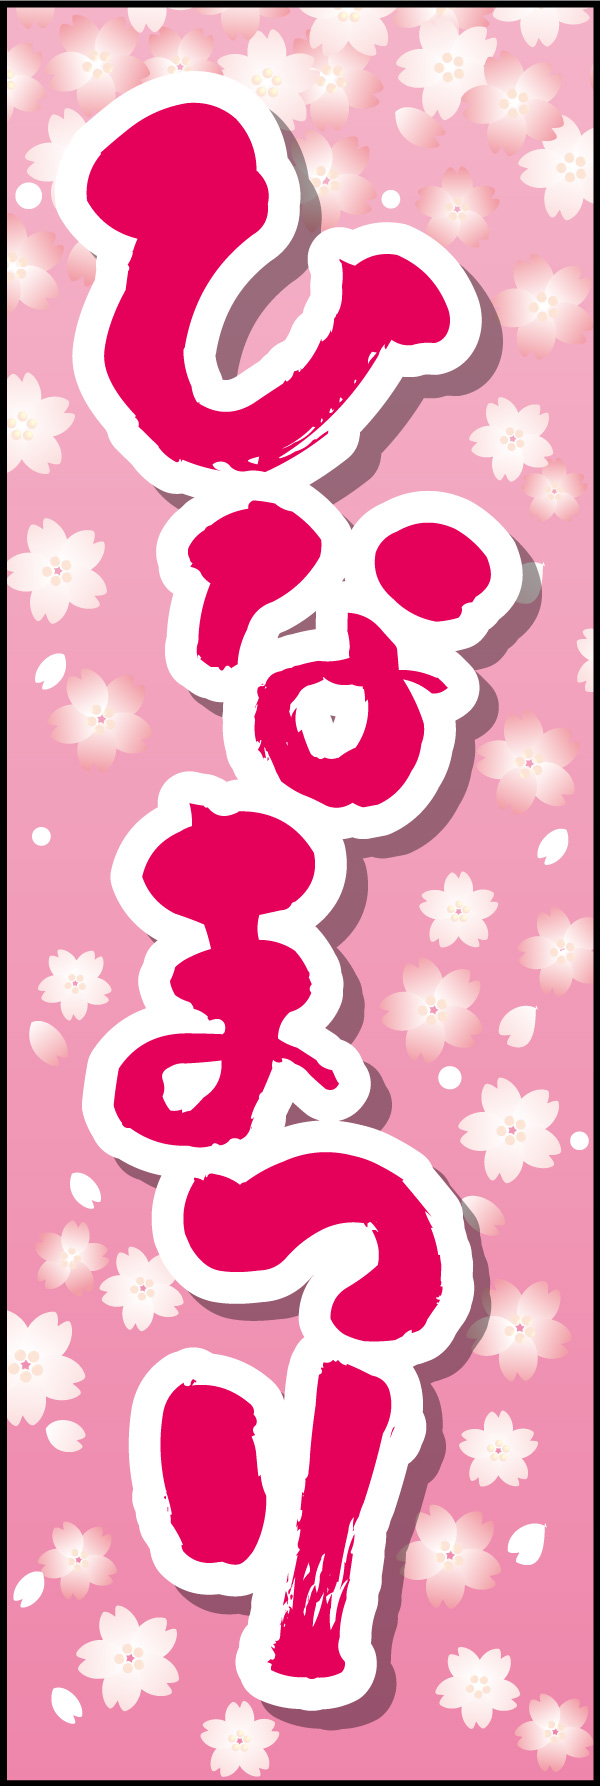 ひなまつり 06「ひなまつり」ののぼりです。華やかなピンクと花柄にデザインしました。(Y.M) 